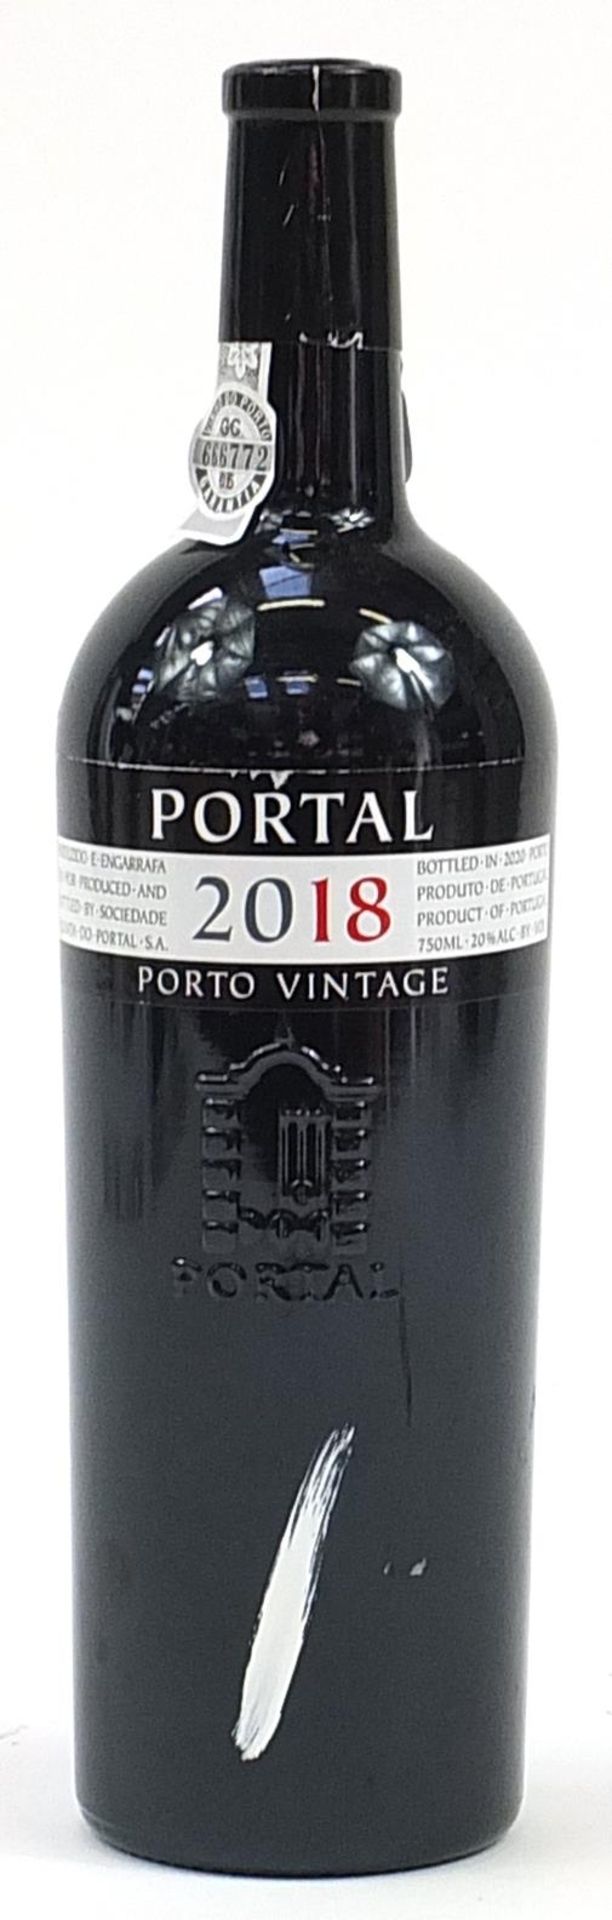 75cl bottle of 2018 Quinta do Portal vintage port